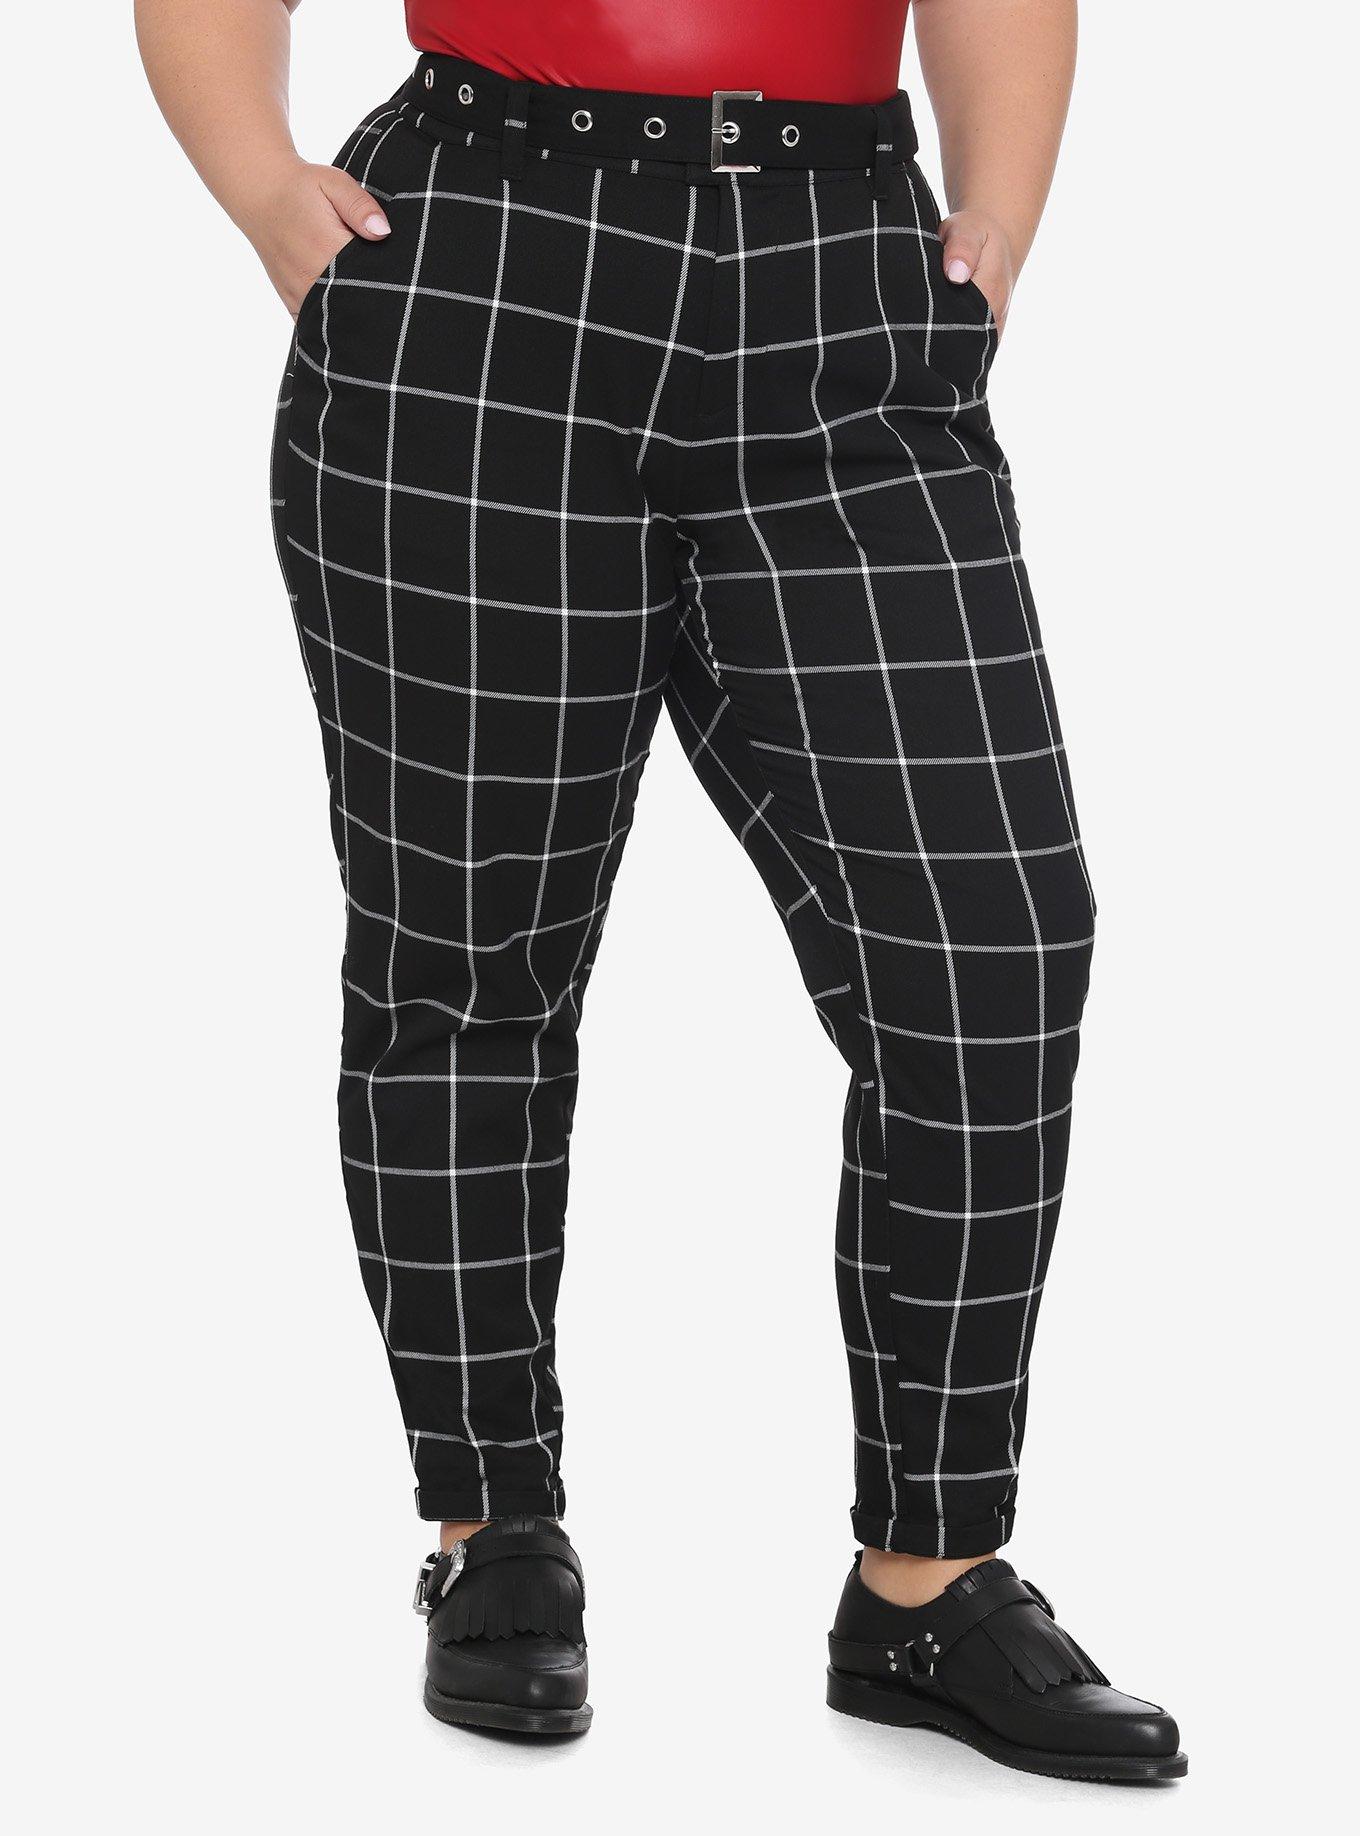 Black & Gray Plaid Pants With Belt Plus Size